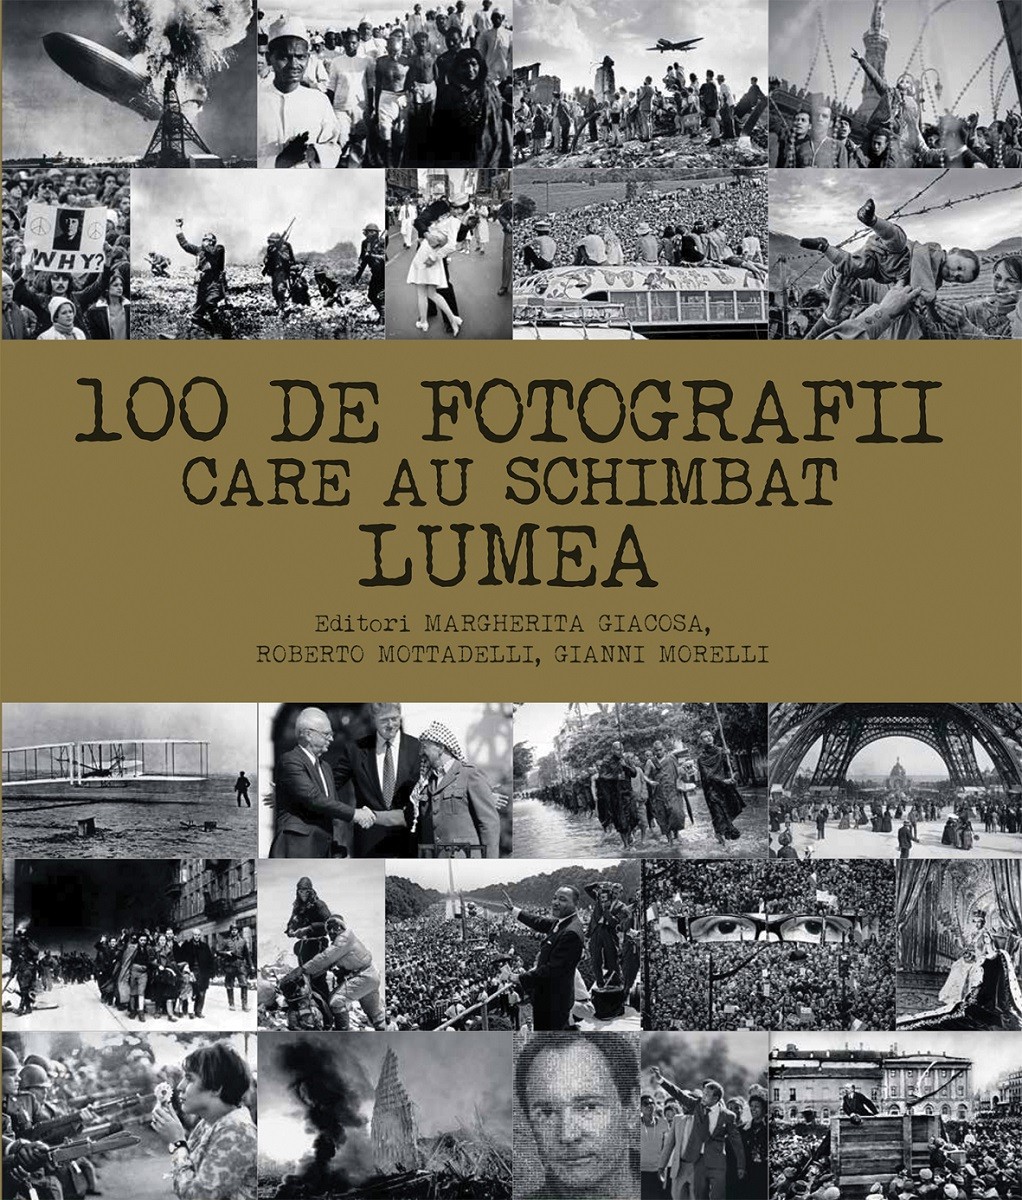 100 de fotografii care au schimbat lumea | Margherita Giacosa, Roberto Mottadelli, Gianni Morelli carturesti.ro poza bestsellers.ro